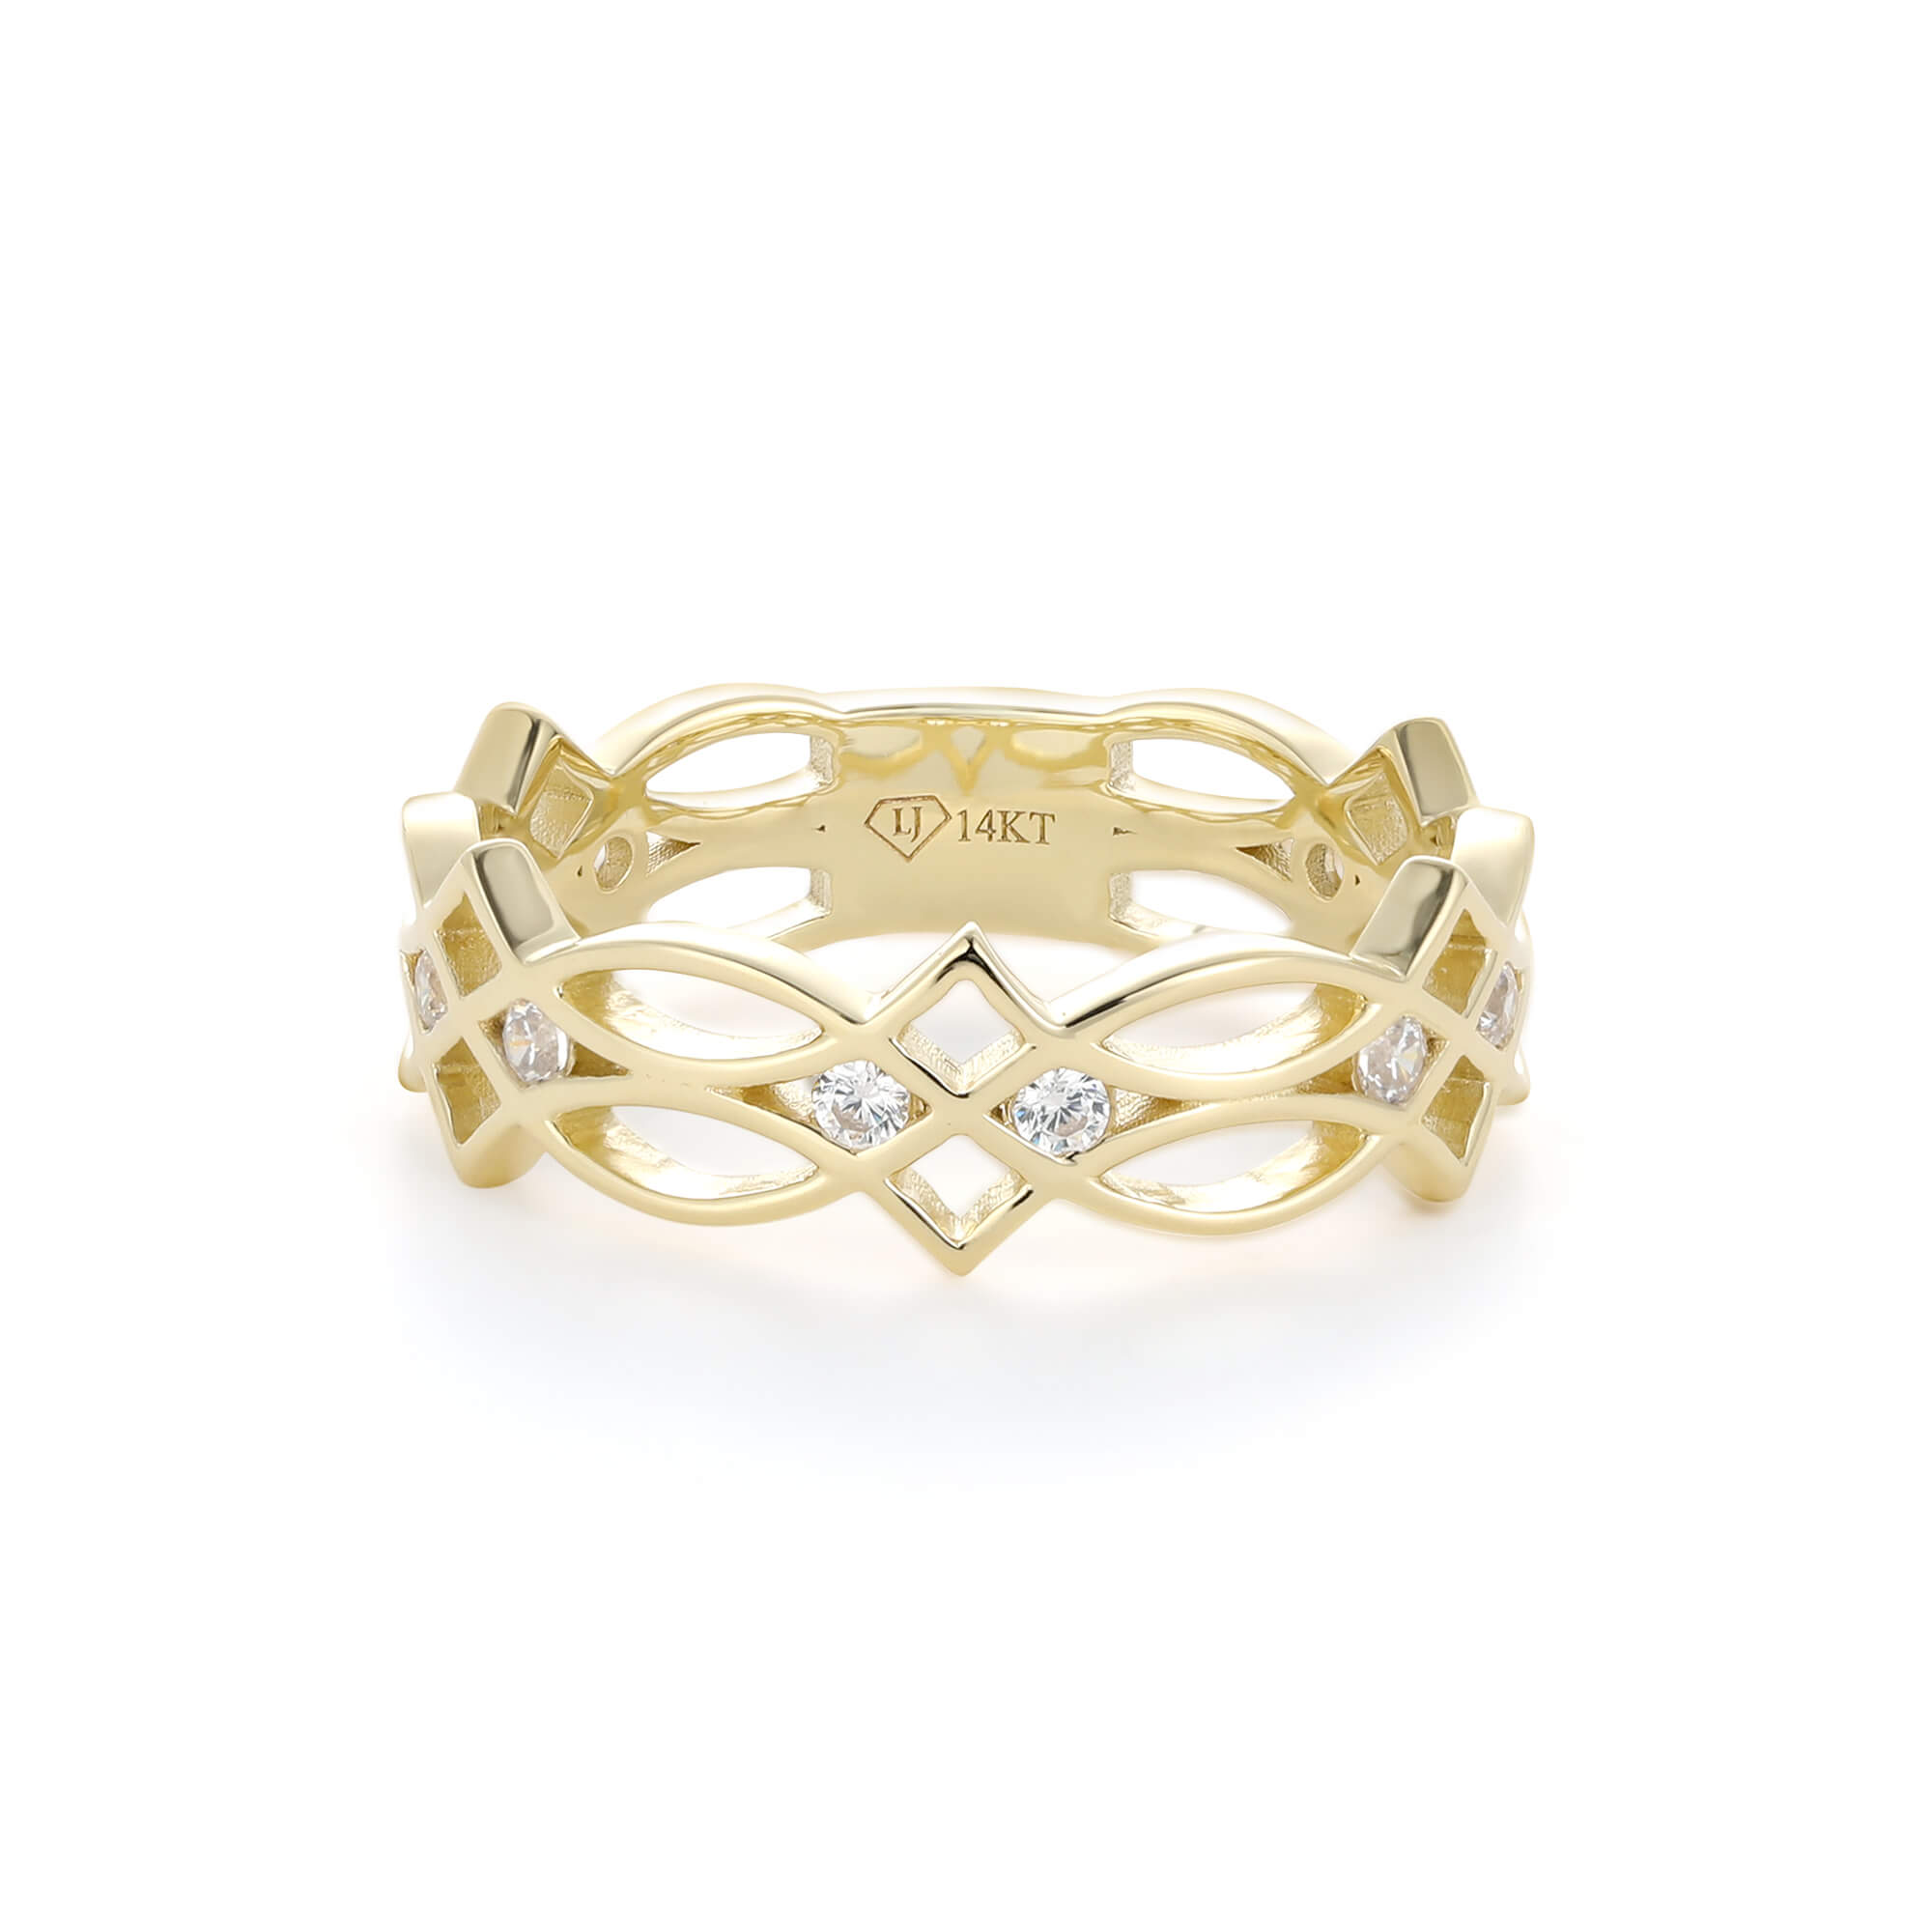 Gold Crown Ring, Princess Crown Ring, Yellow Gold Ring, Unique Gold Ring,  Luxury Gold Ring, Engagement Ring, Stacking Ring, Tiara - Etsy